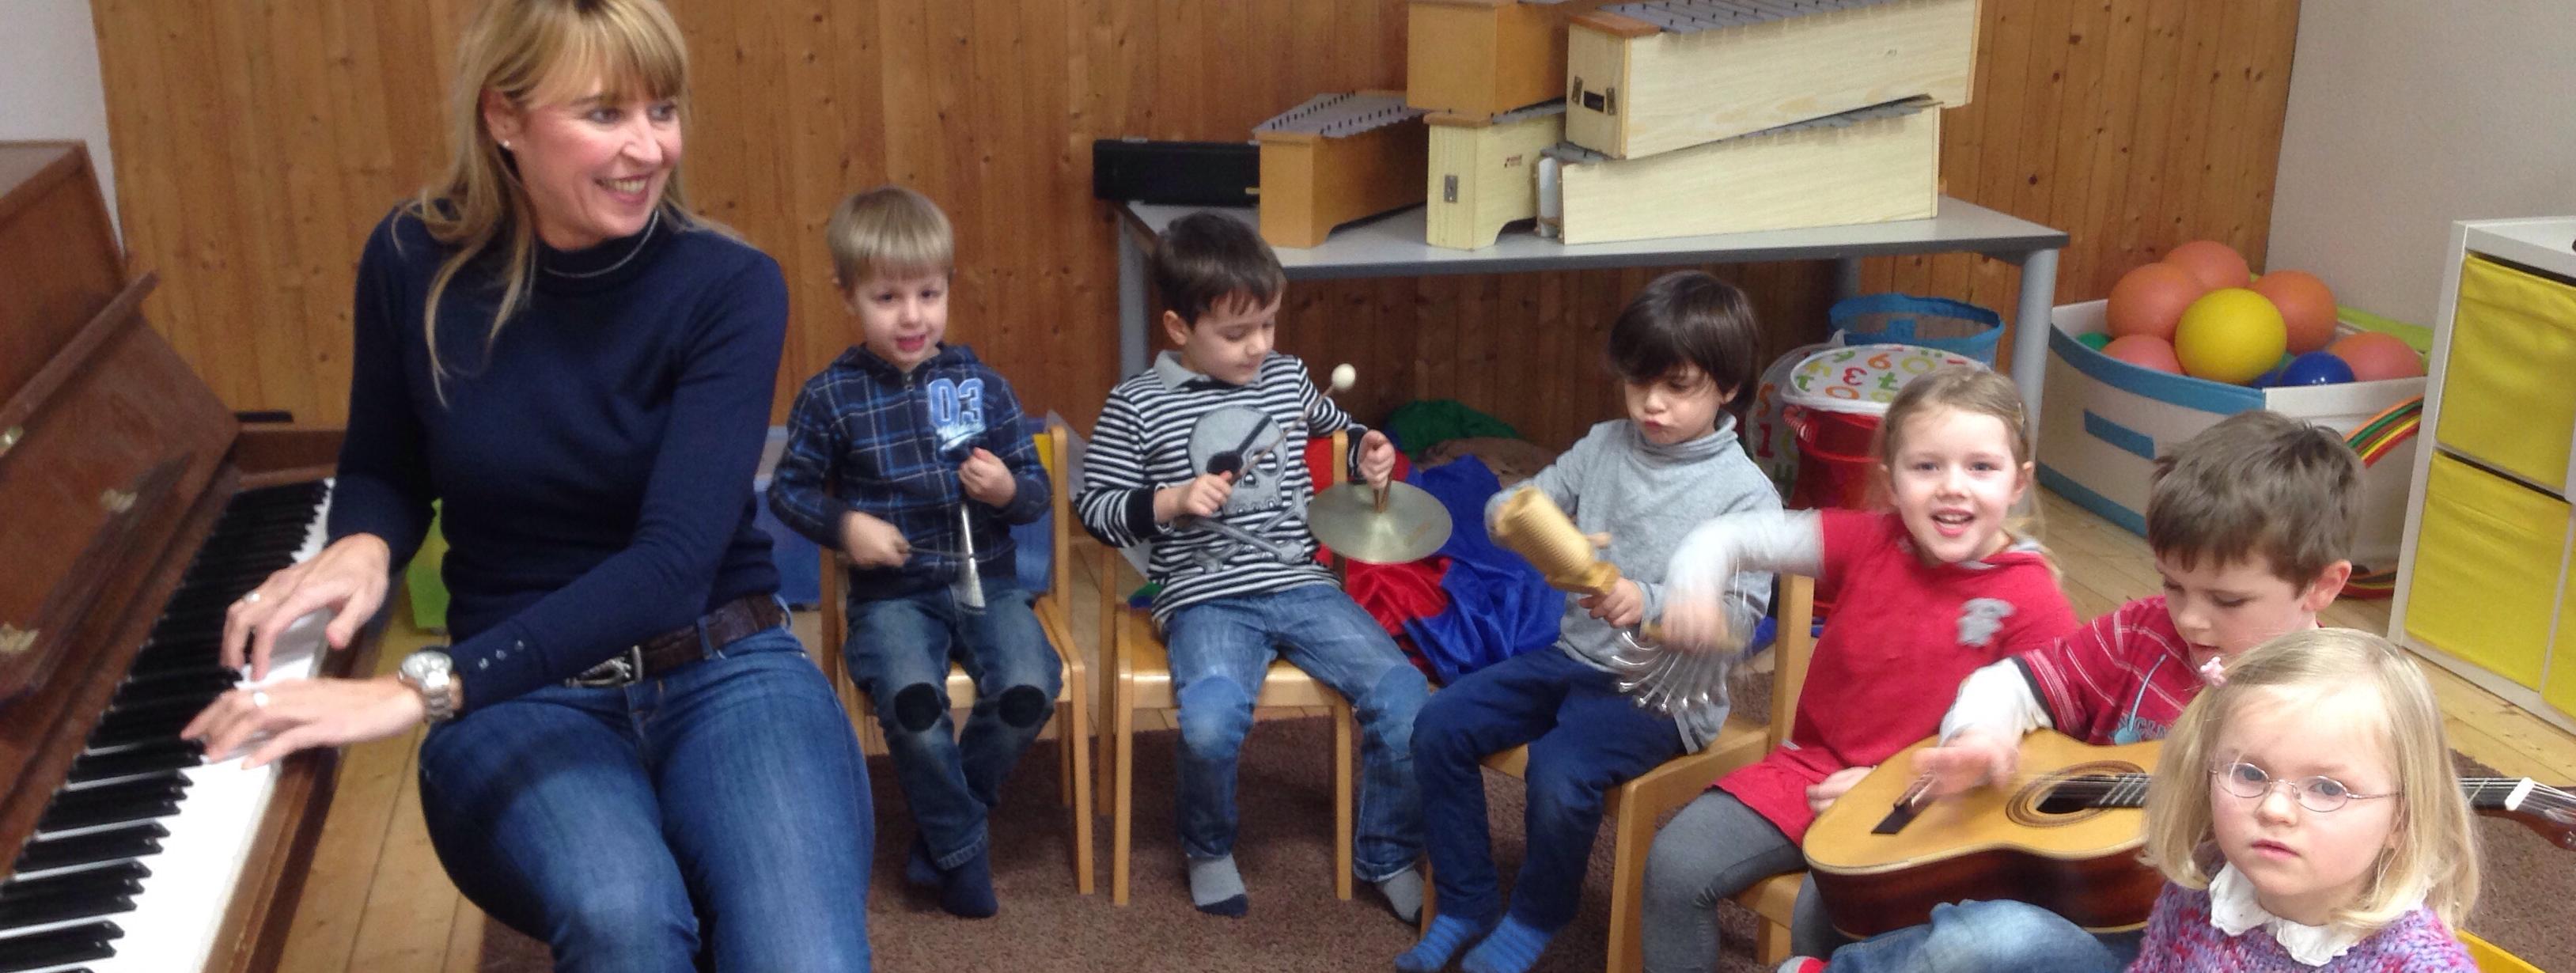 sechs kleine Kinder sitzen auf Stühlen in einem Halbkreis um ihre Musiklehrerin herum. Die Lehrerin hat die Hände auf die Tasten eines Klaviers gelegt und erklärt den Kindern etwas.